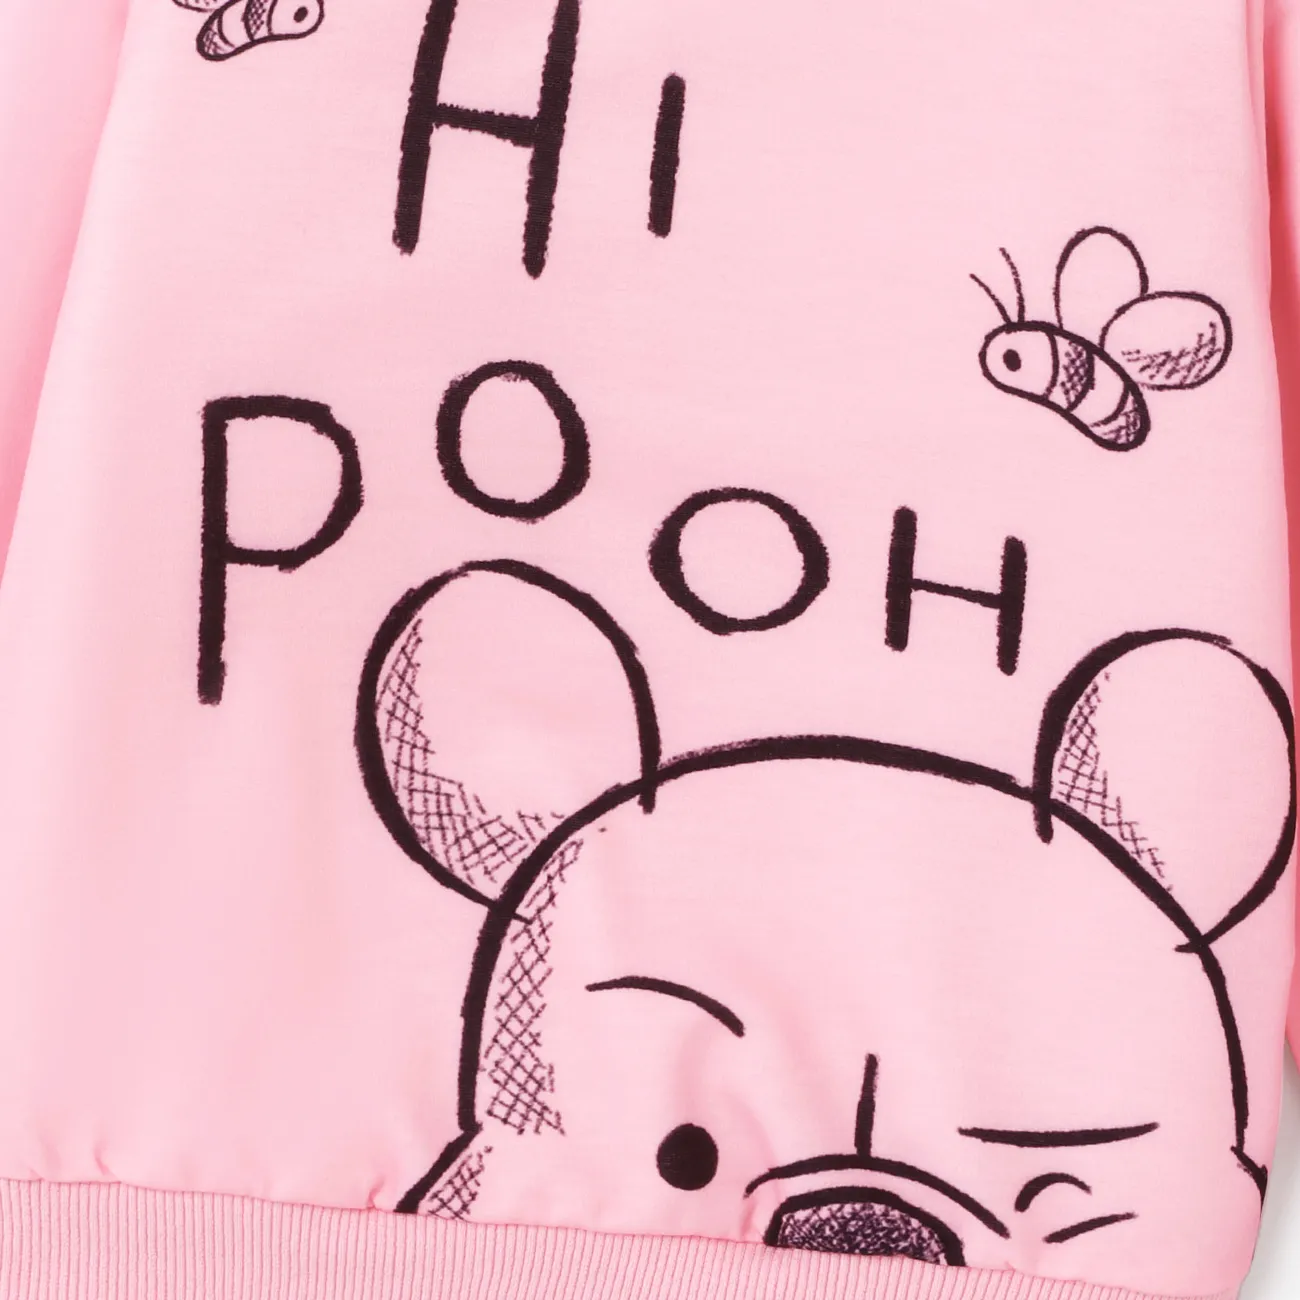 Disney Winnie the Pooh Unisexe Enfantin Sweat-shirt Rose big image 1